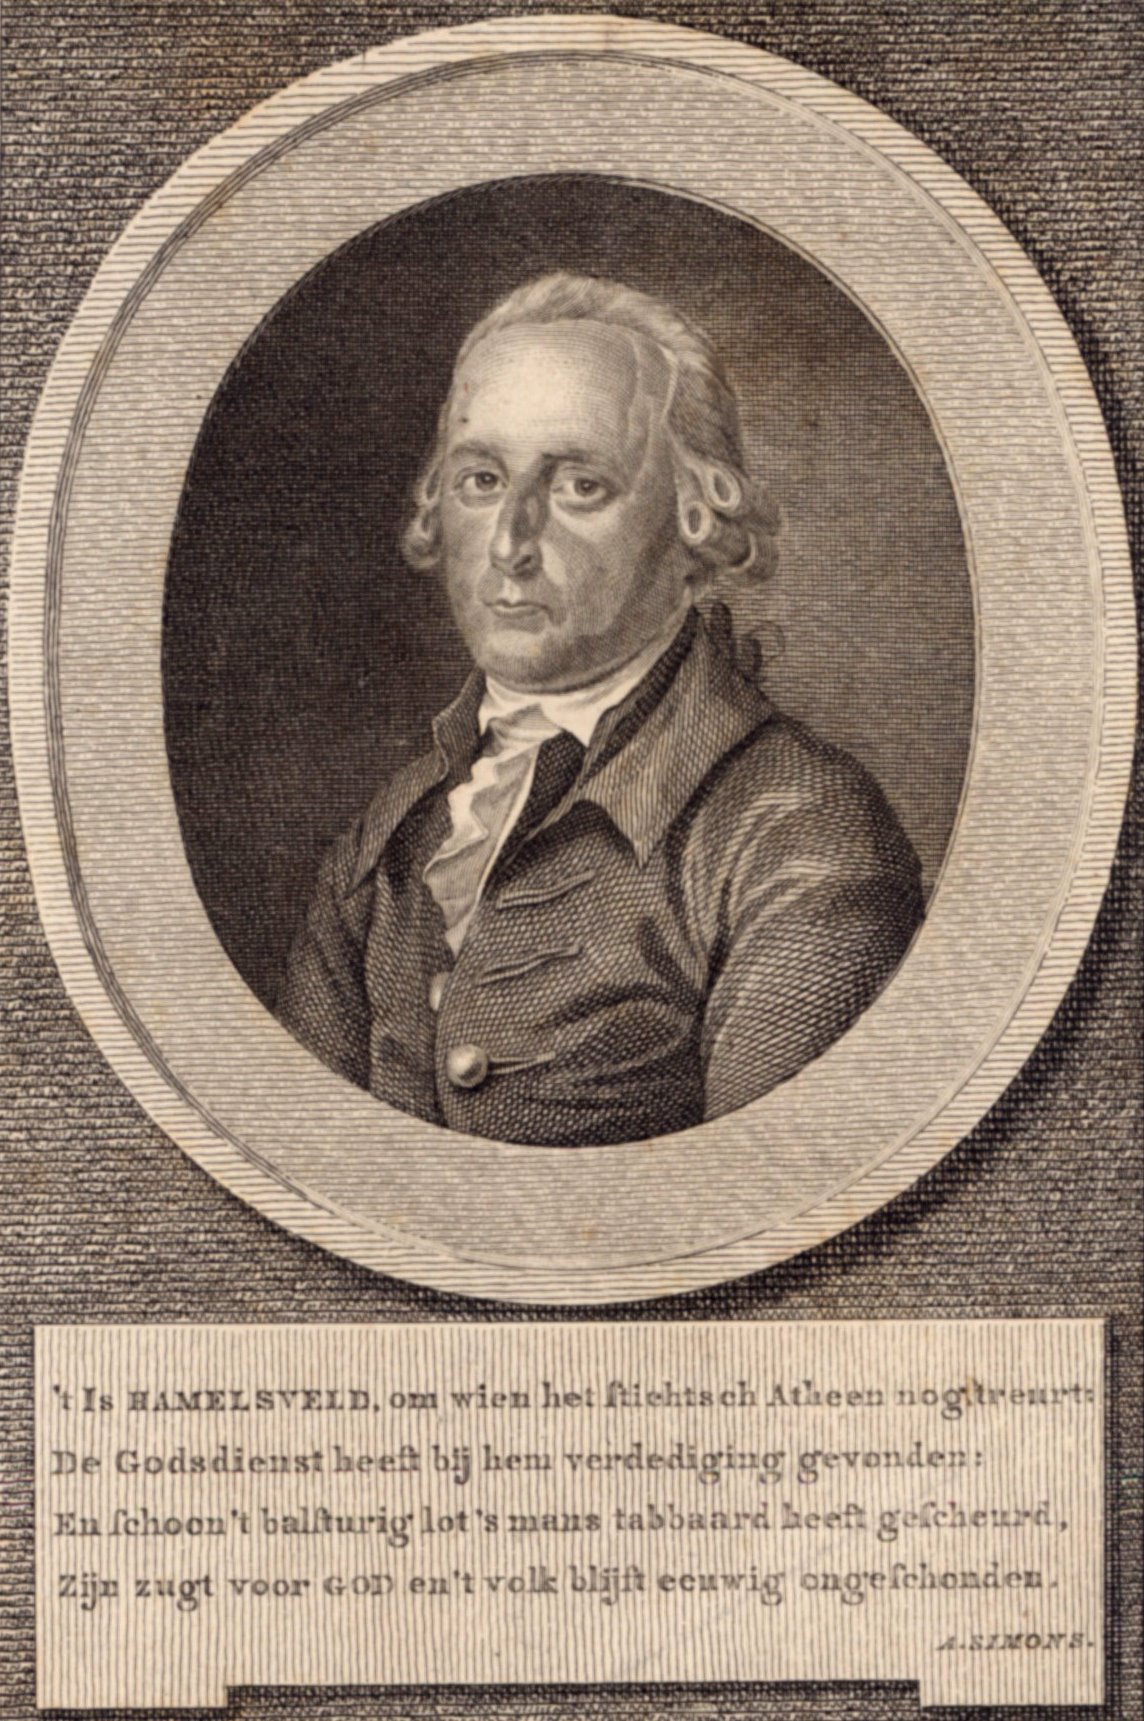 Dominee Ysbrand van Hamelsveld, predikant te Goes van 1777-1779.